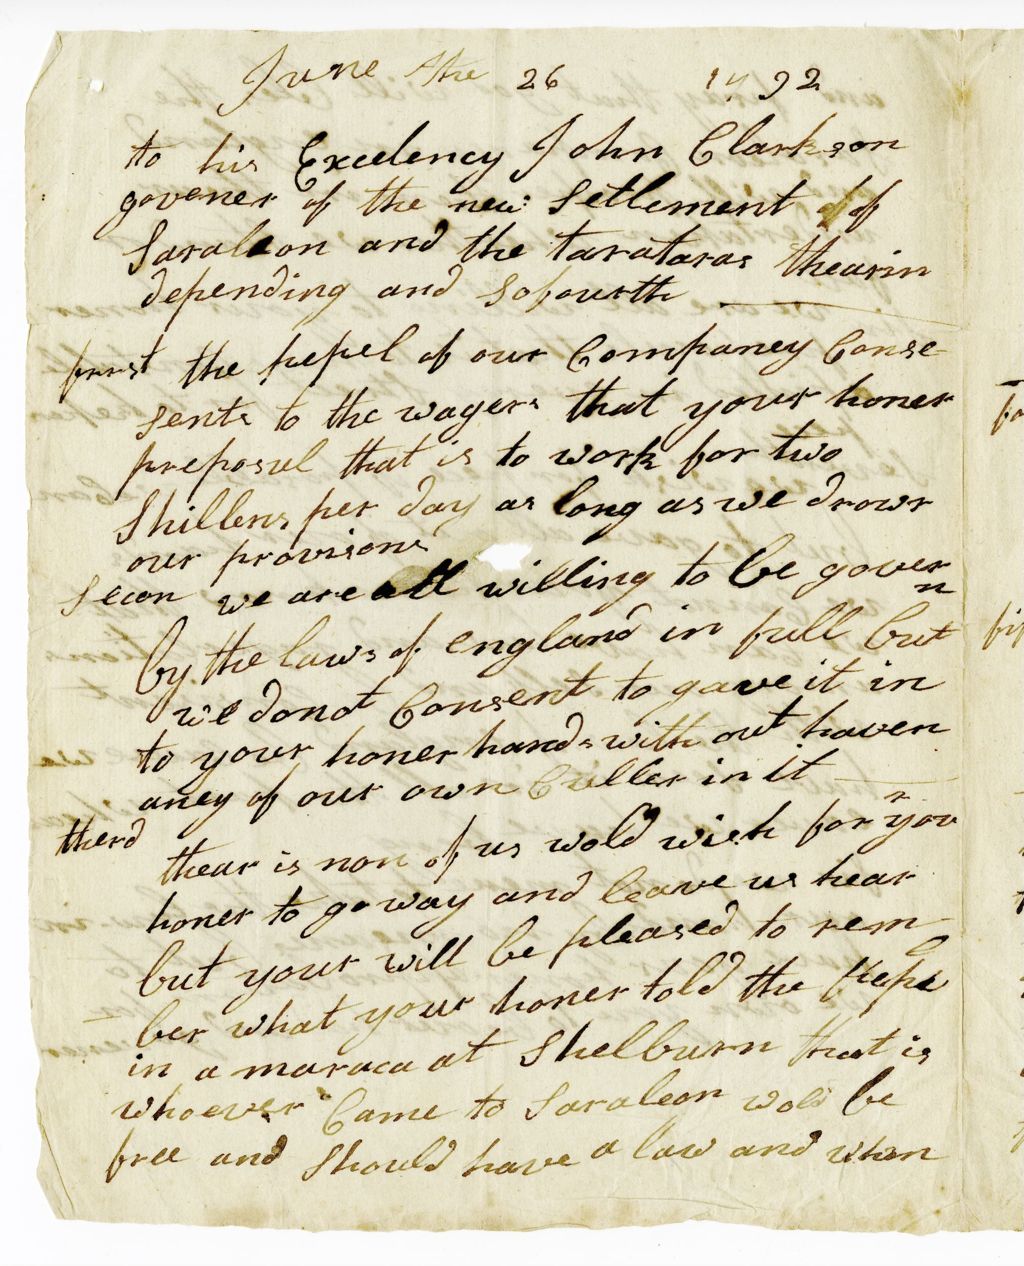 Miniature of Letter to John Clarkson, June 26, 1792